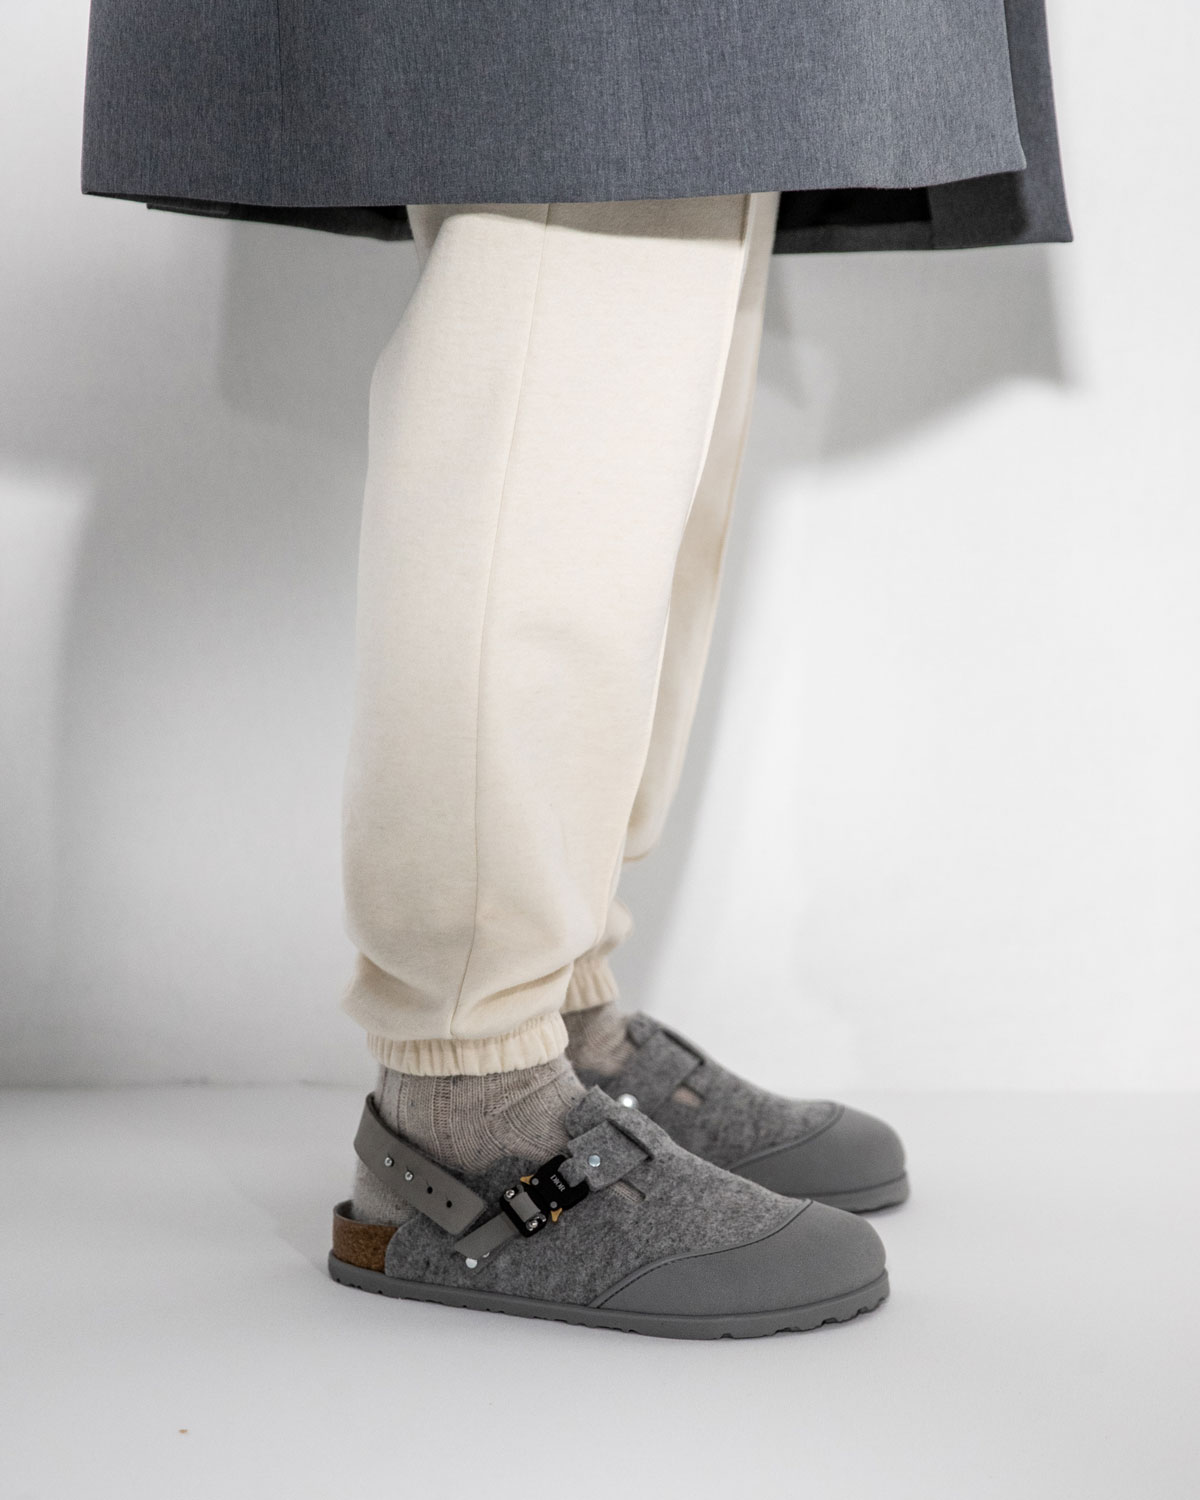 Dior x Birkenstock FW22 Sandals: First Look, Release Date